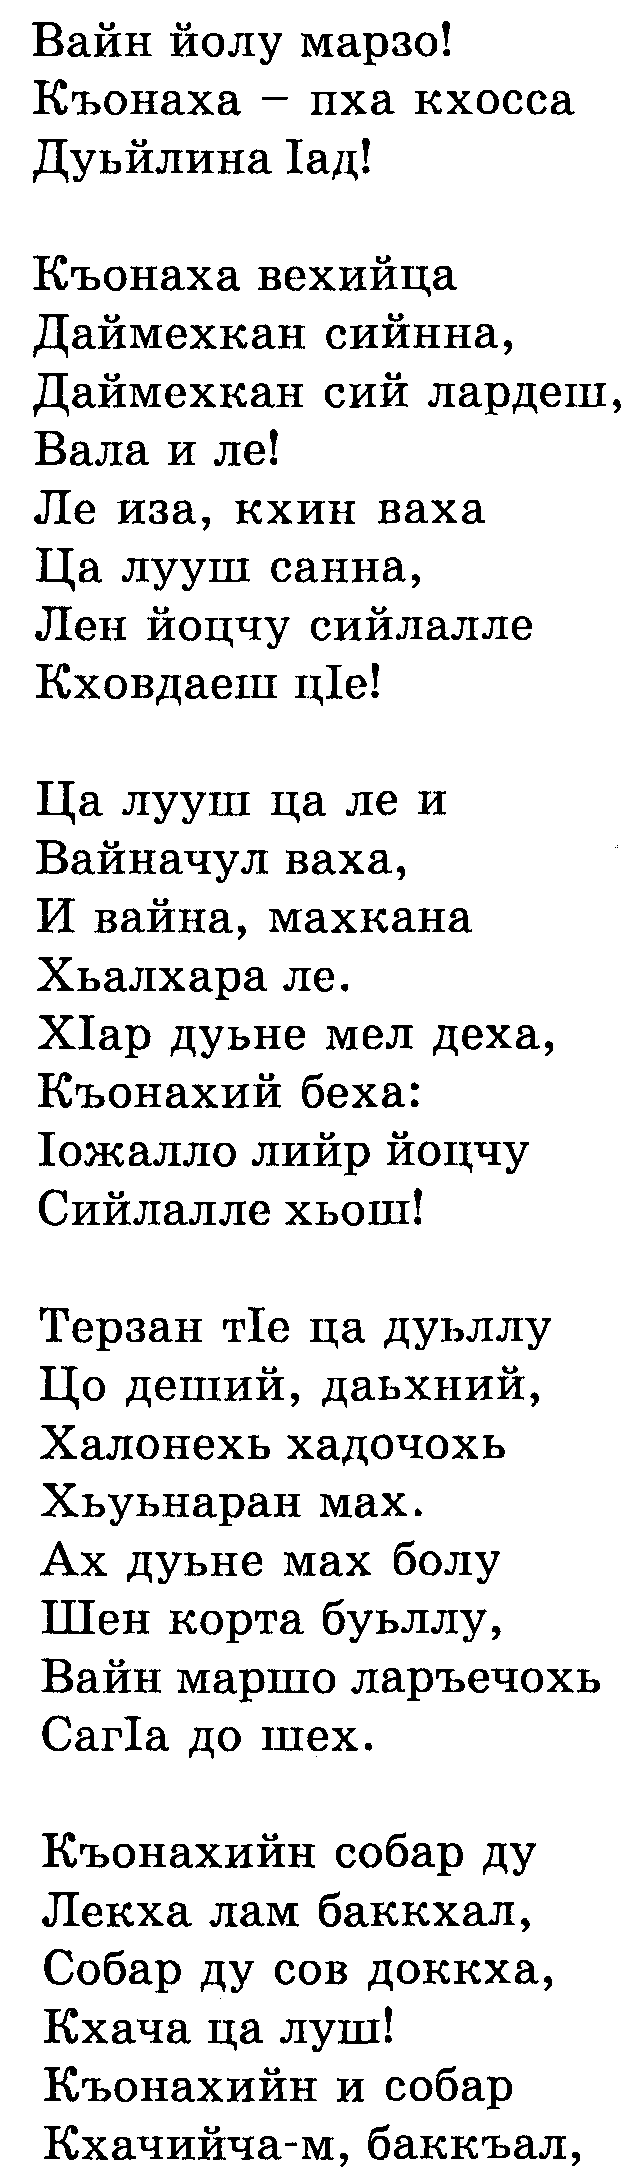 План-конспект урока по чеченской литературе на темуДикаев Мохьмадан поэзехь яхь (11 класс)